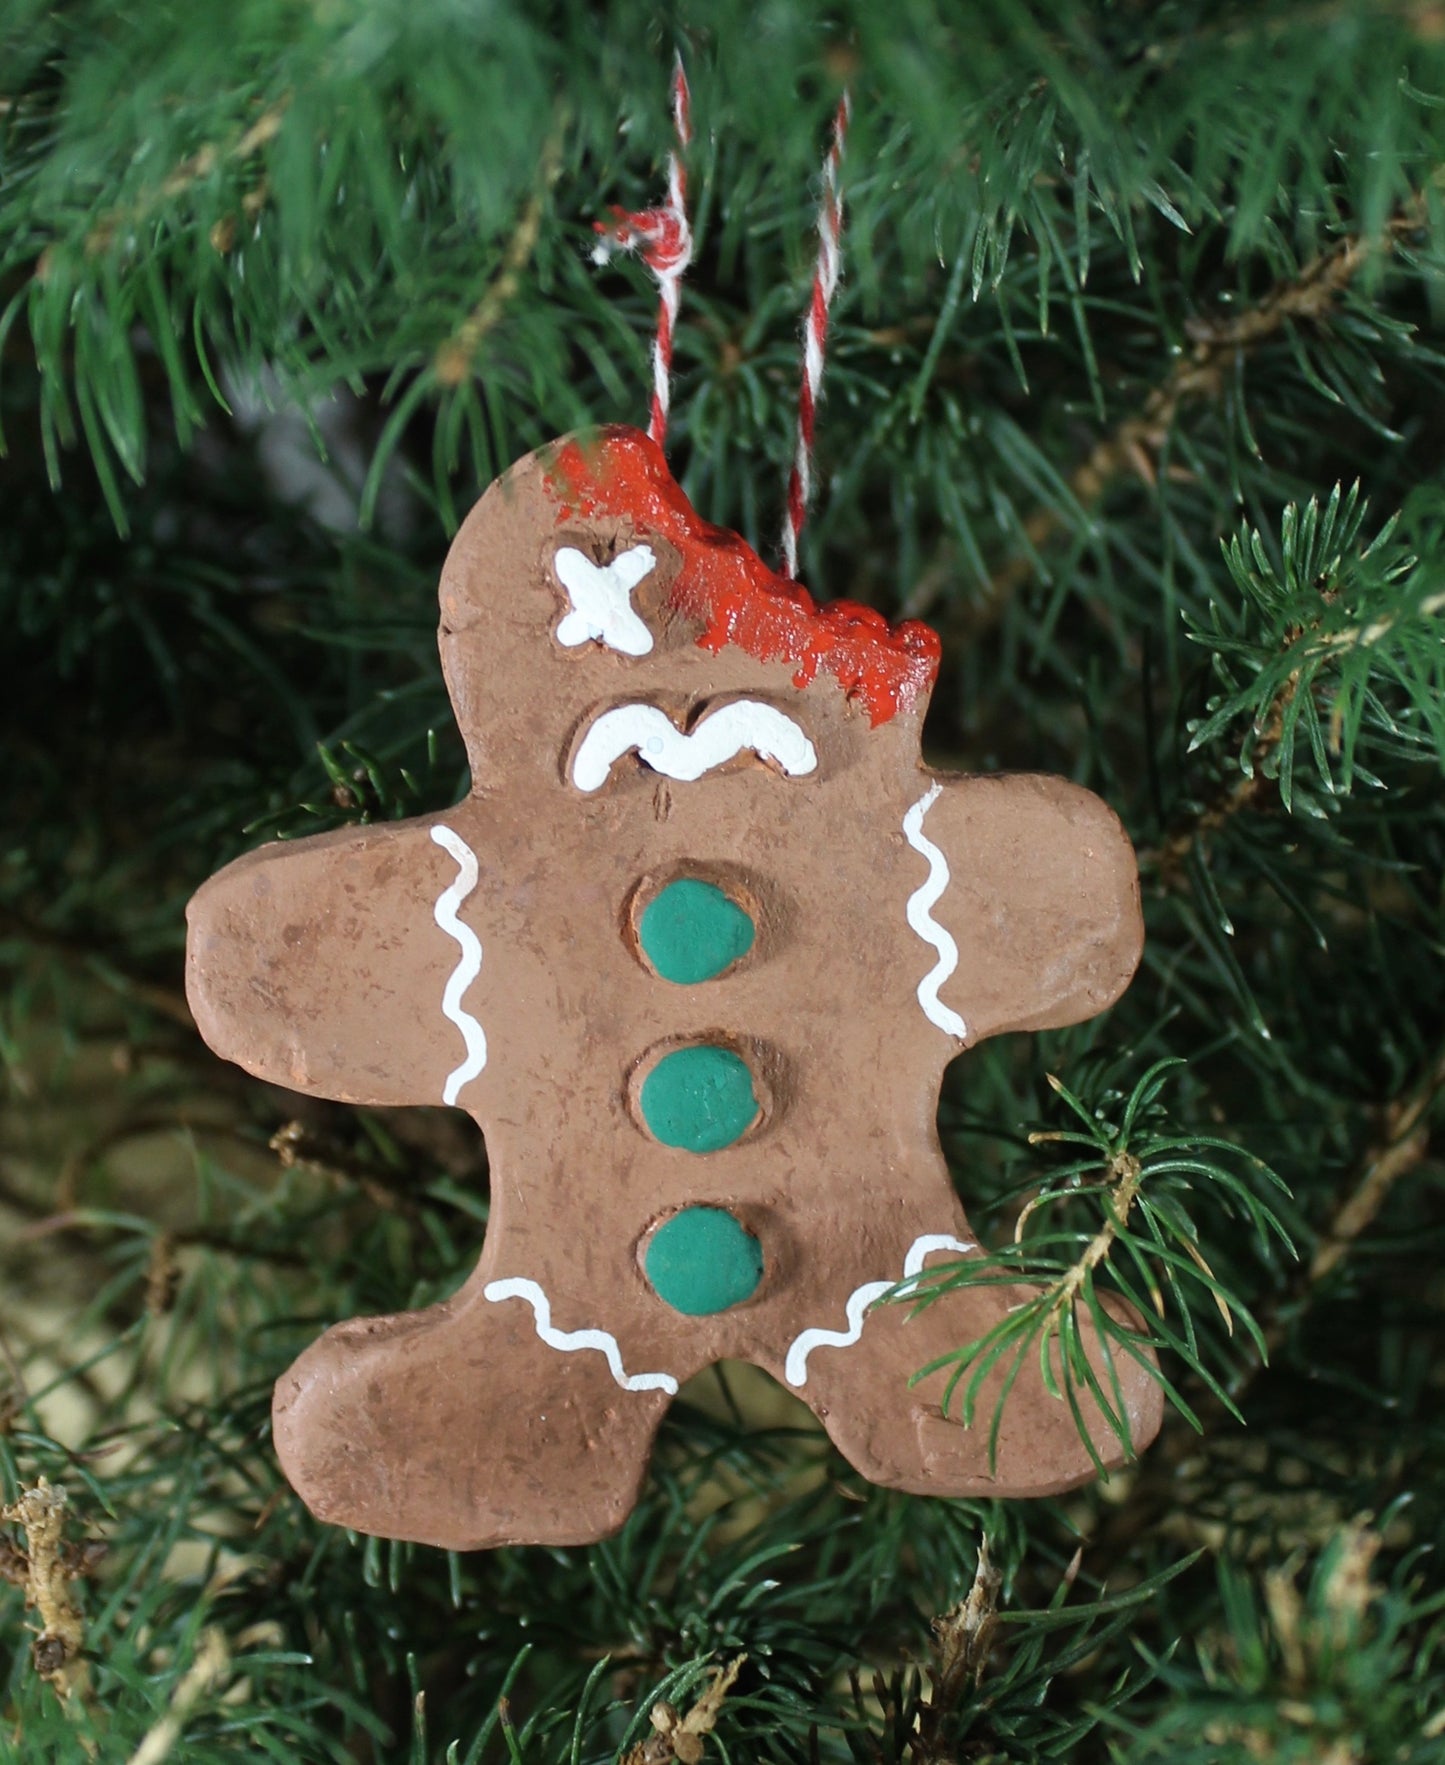 3 Ginger-Dead Men (Christmas Ornaments)